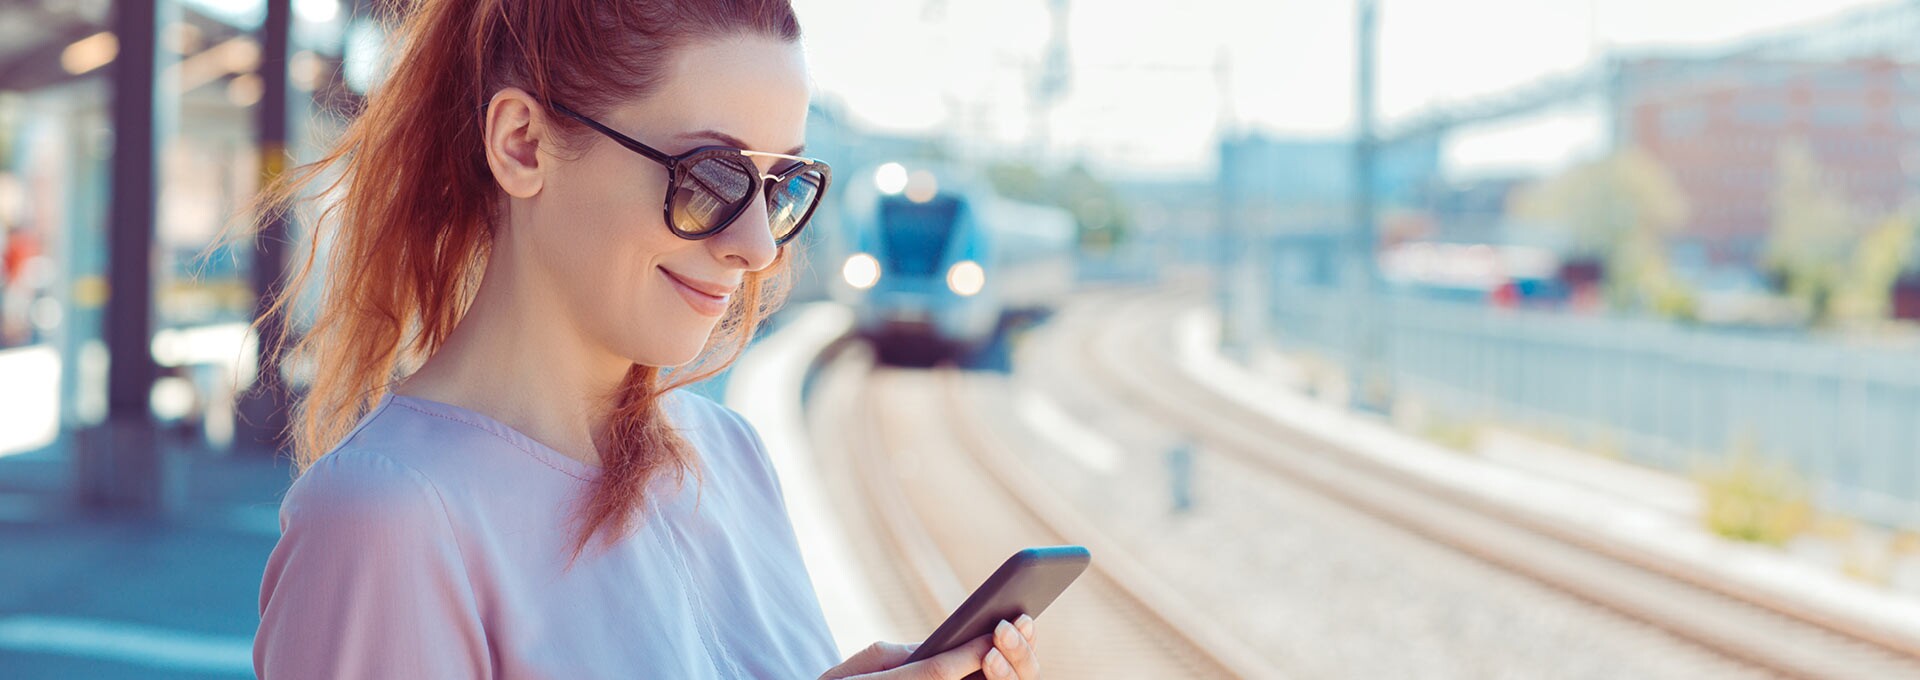 Frau mit Sonnenbrille am Bahngleis guckt auf das Handy